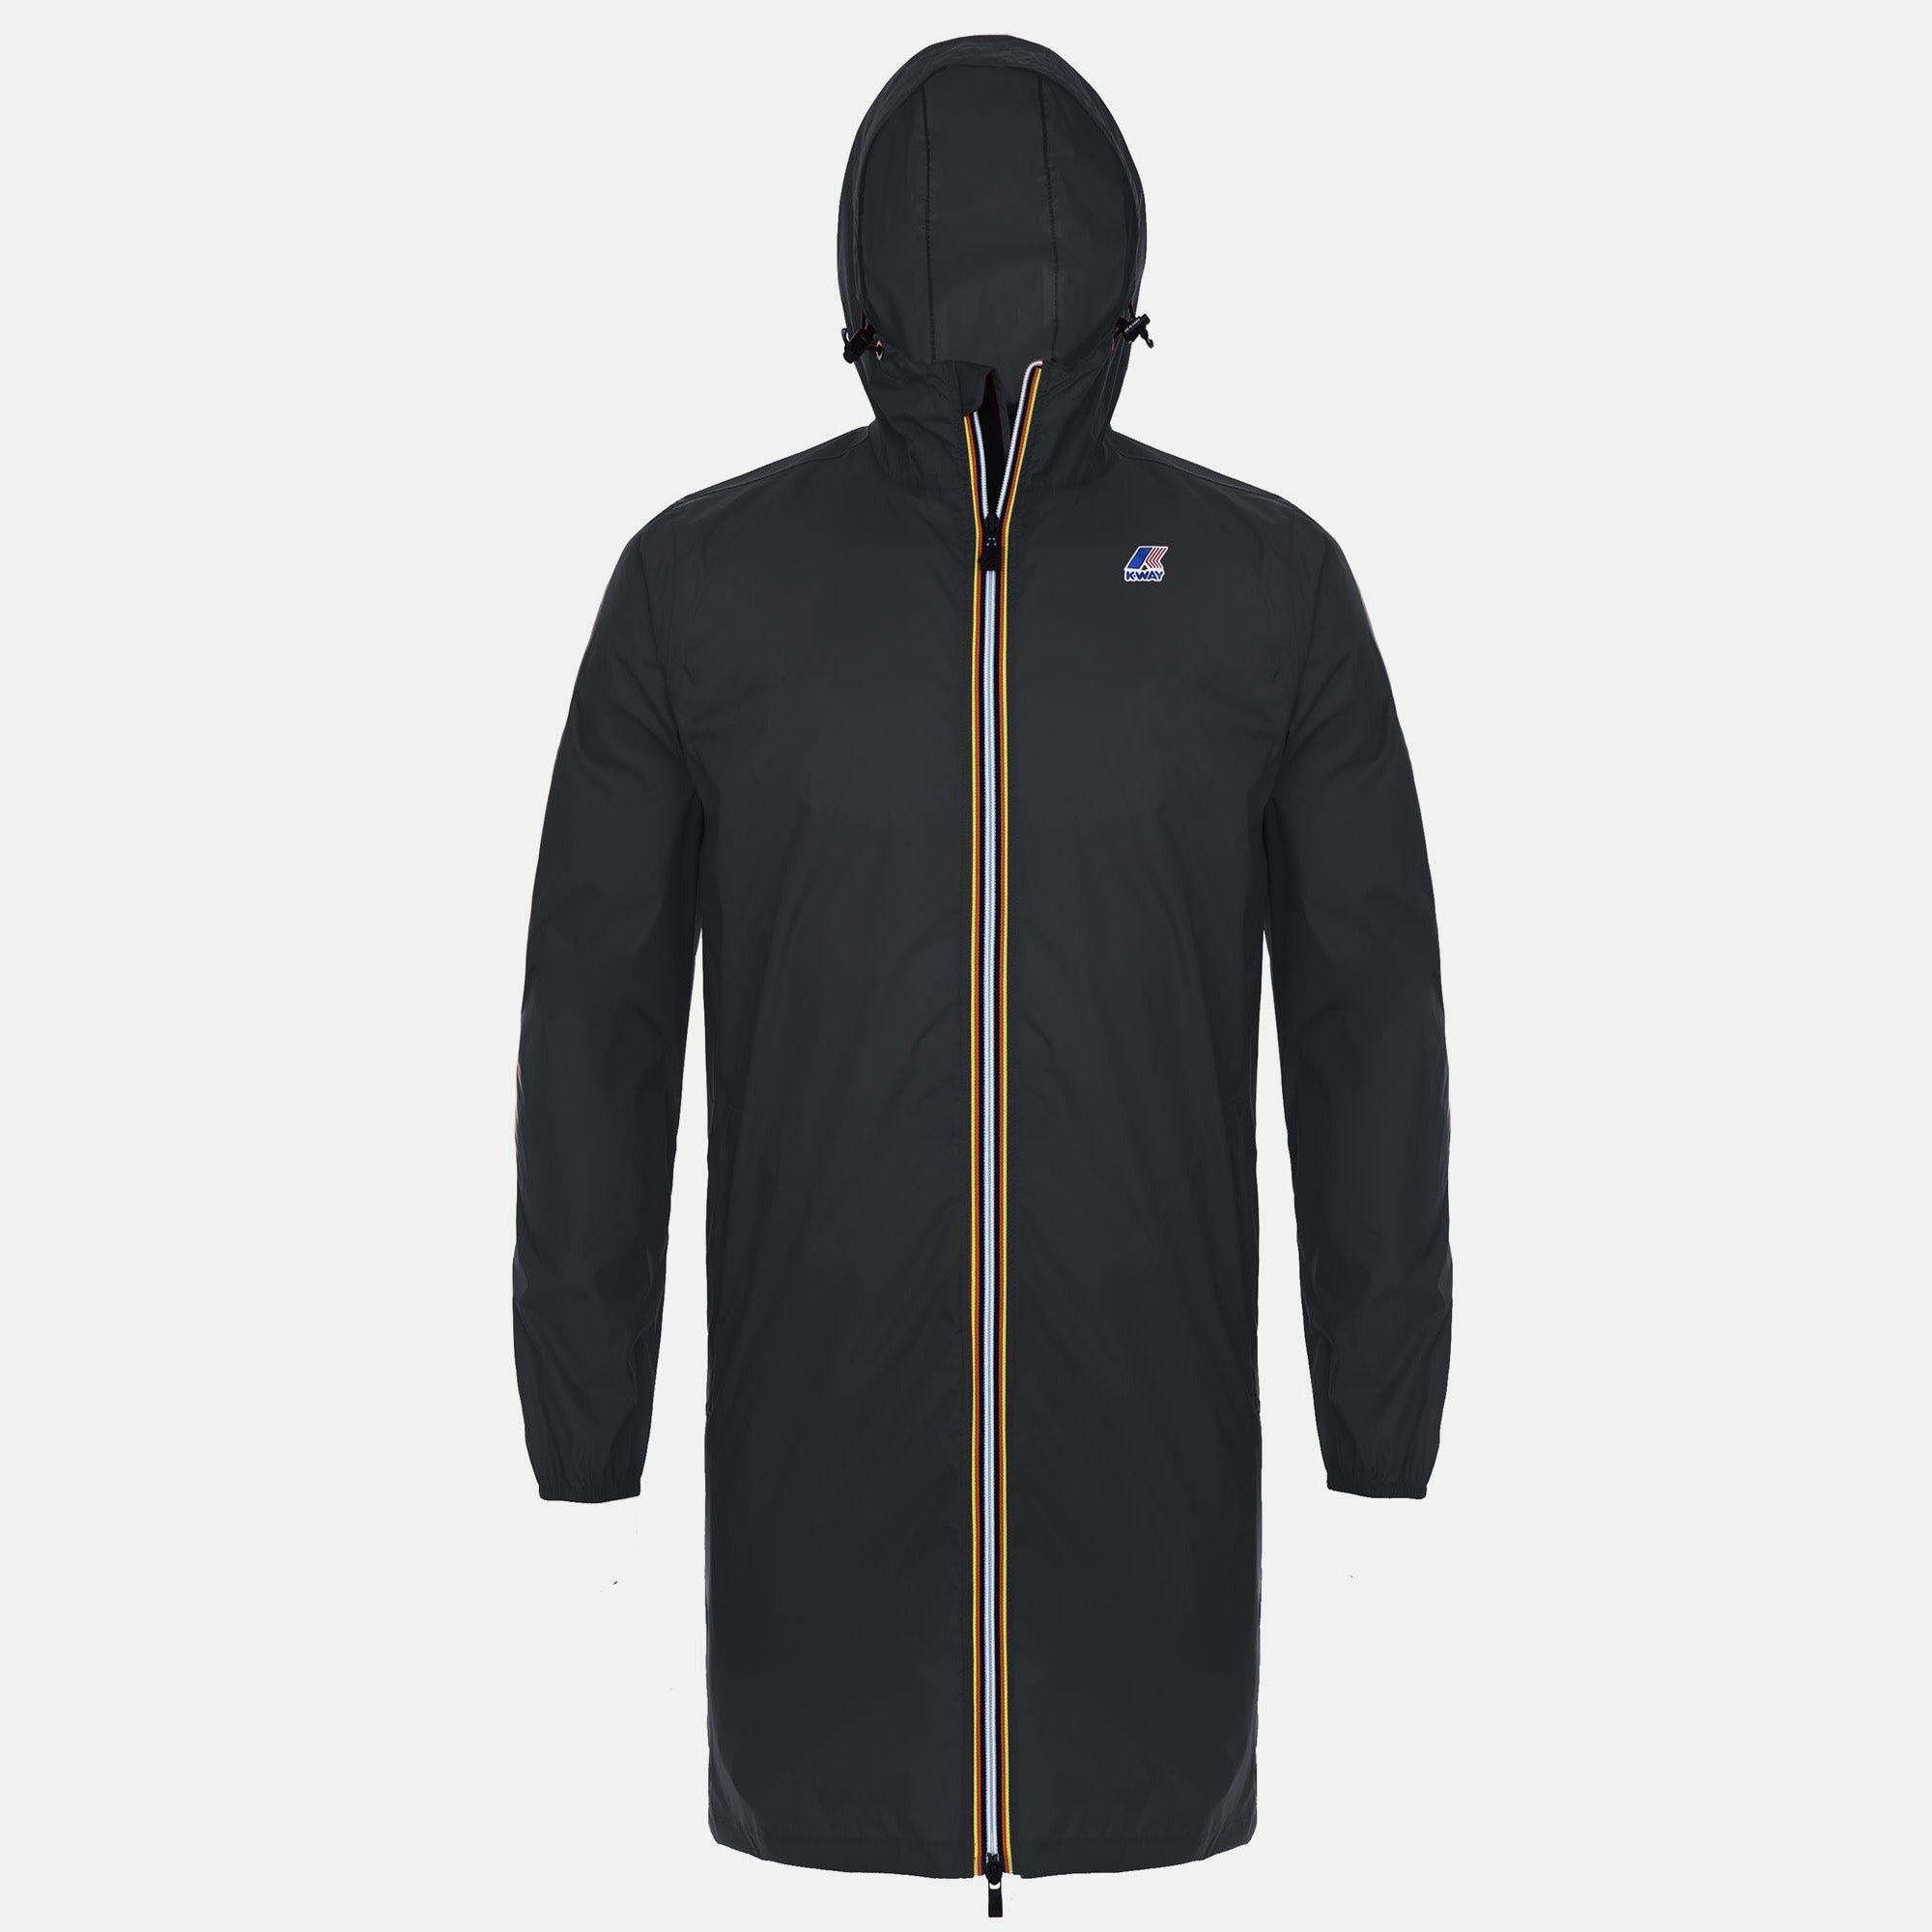 Eiffel - Unisex Waterproof Packable Long Rain Jacket in Black